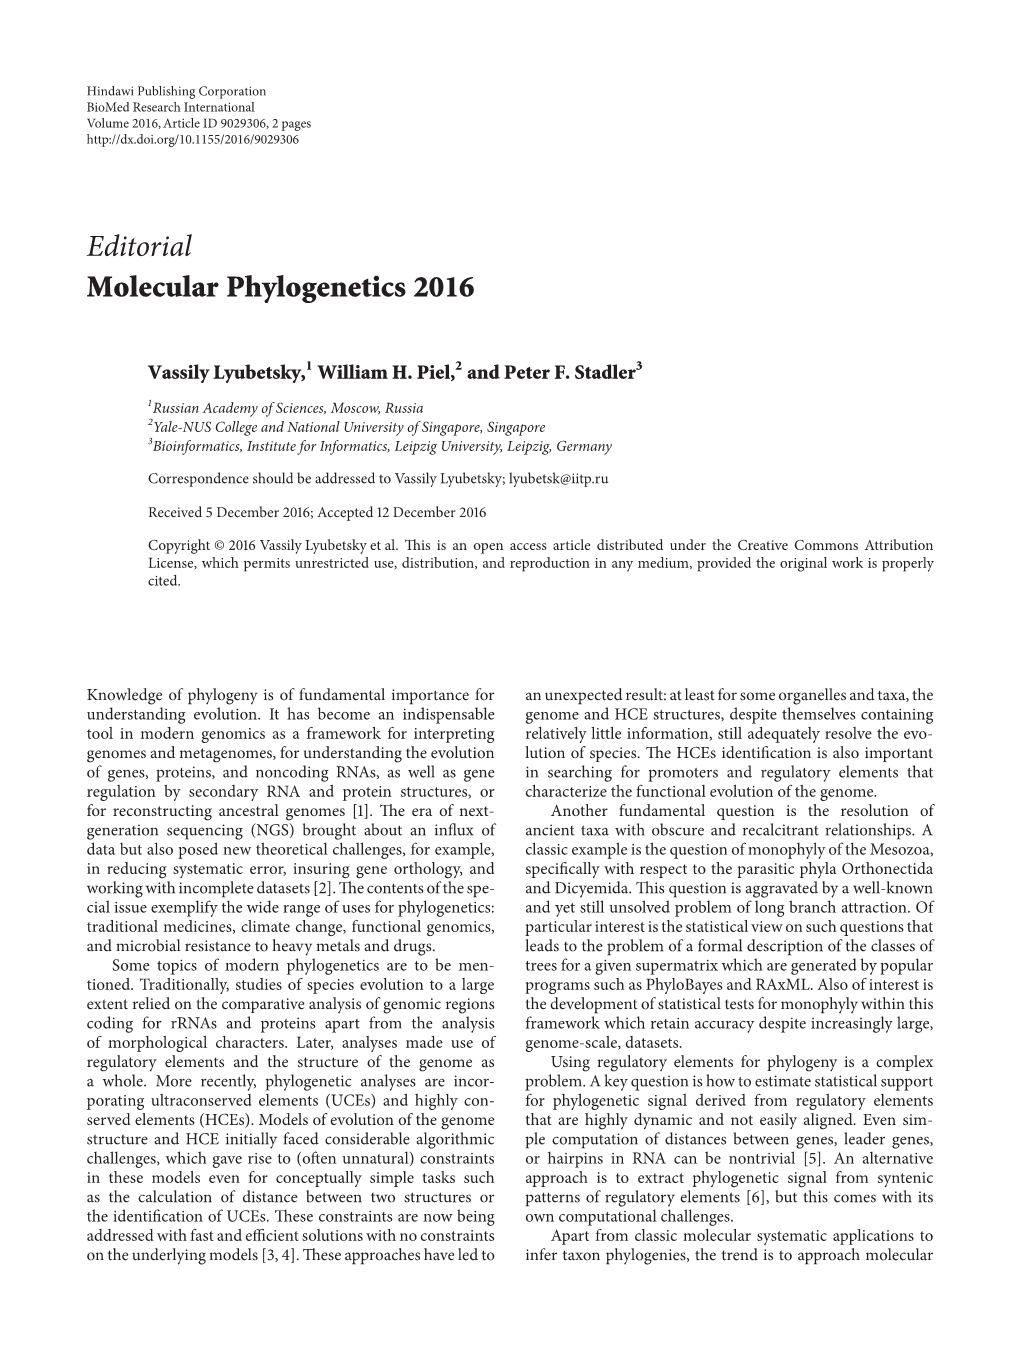 Editorial Molecular Phylogenetics 2016